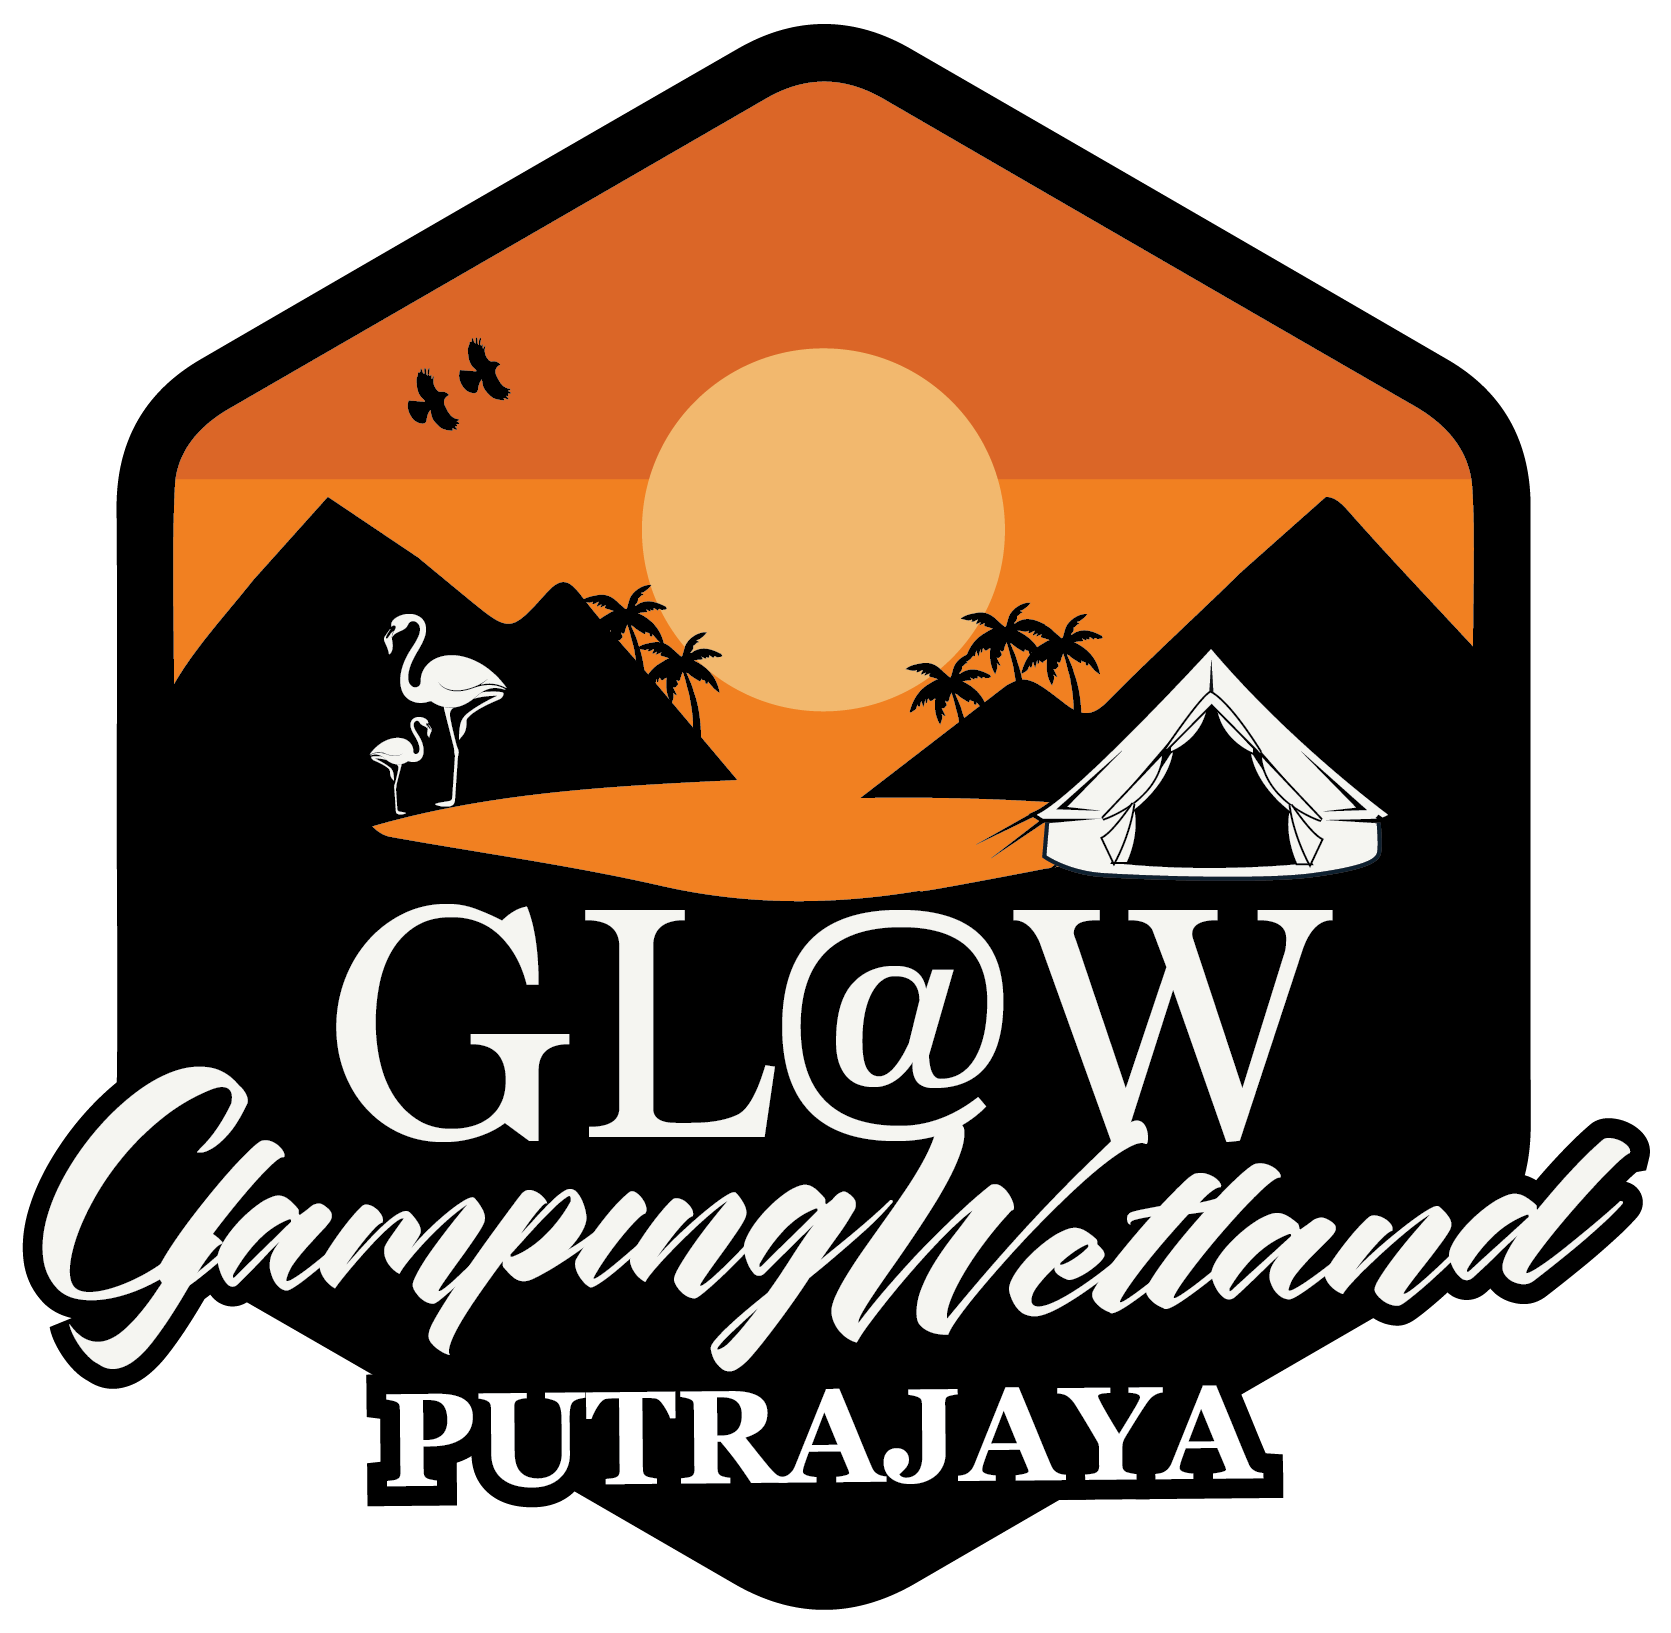 Glamping@Wetland Putrajaya